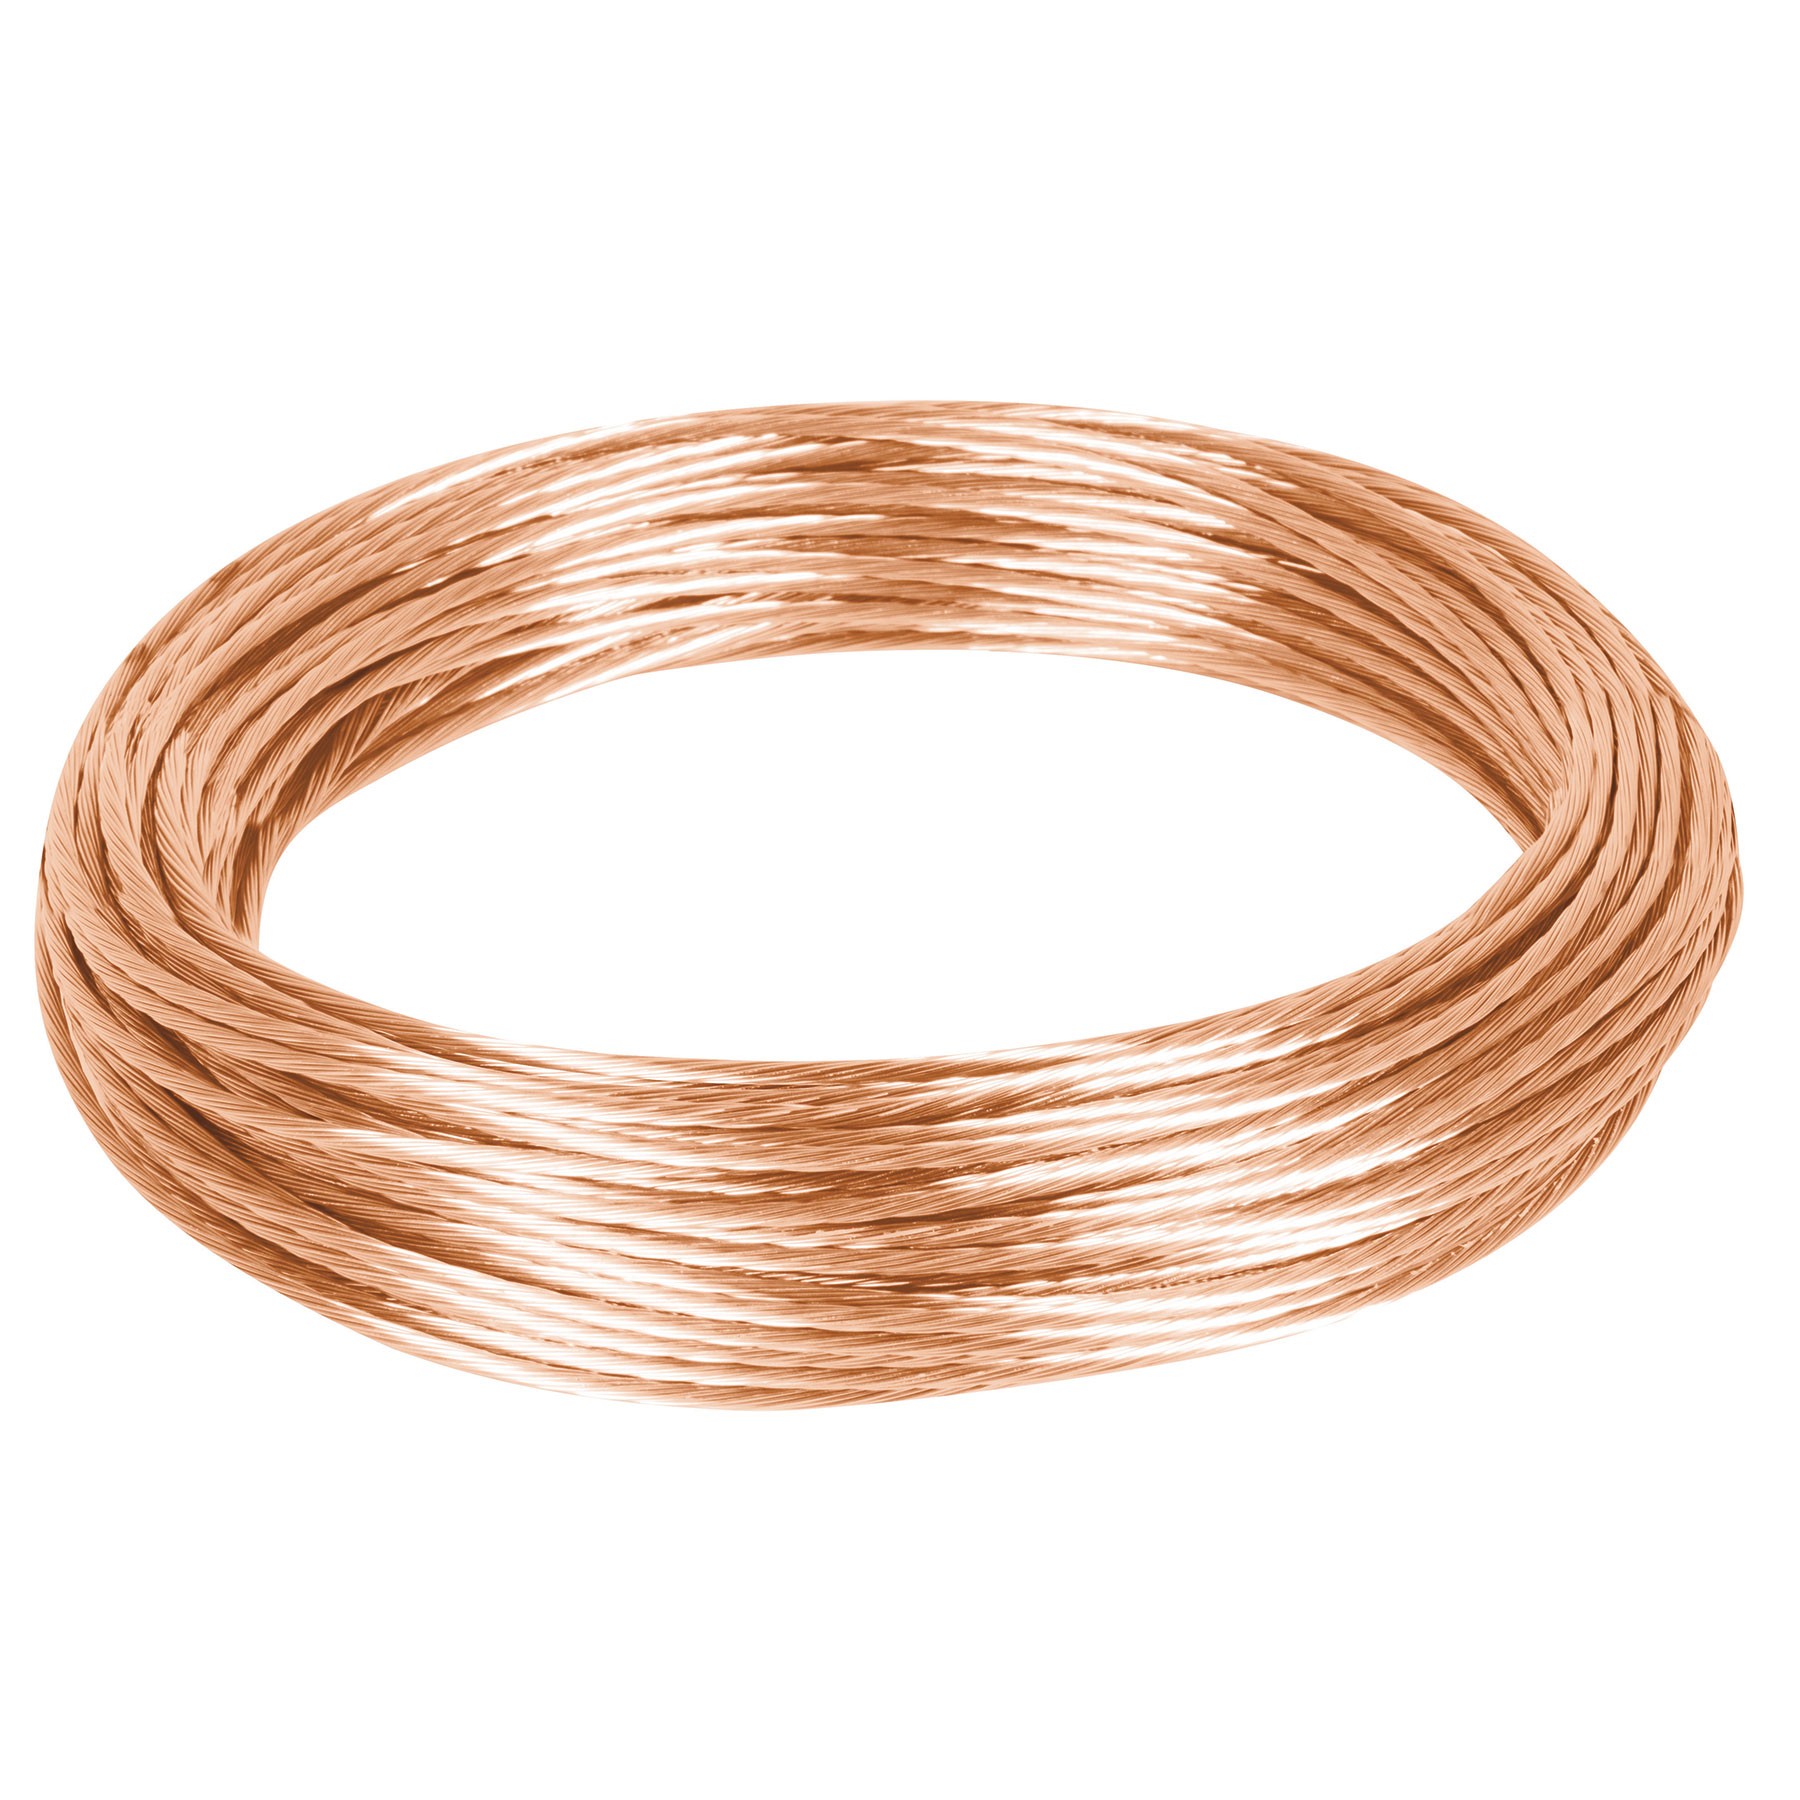 Metro de cable desnudo de cobre calibre 12 AWG, rollo 25 m